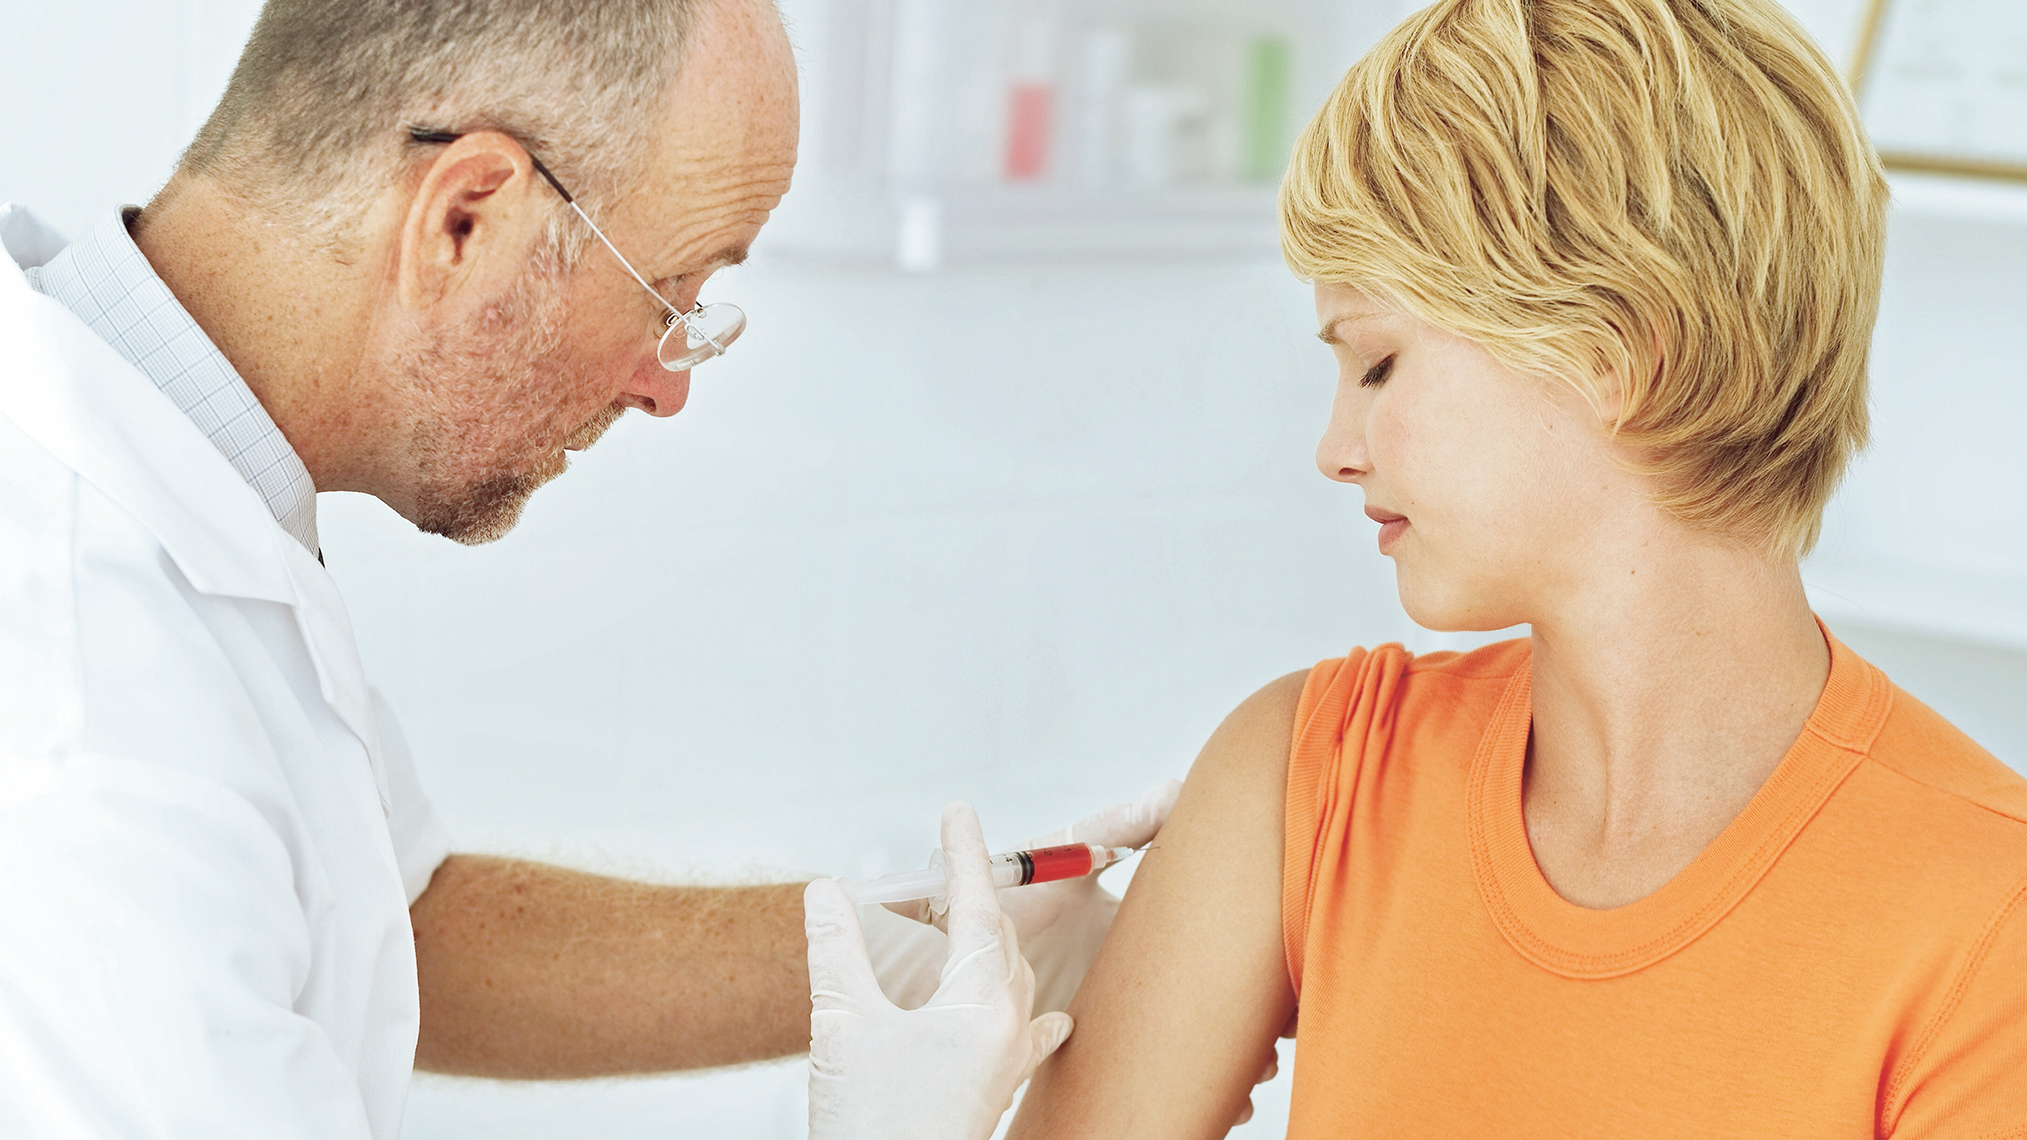 Hpv impfung ikk klasszikus, HPV – was ist das eigentlich? cryopharma a lábak számára